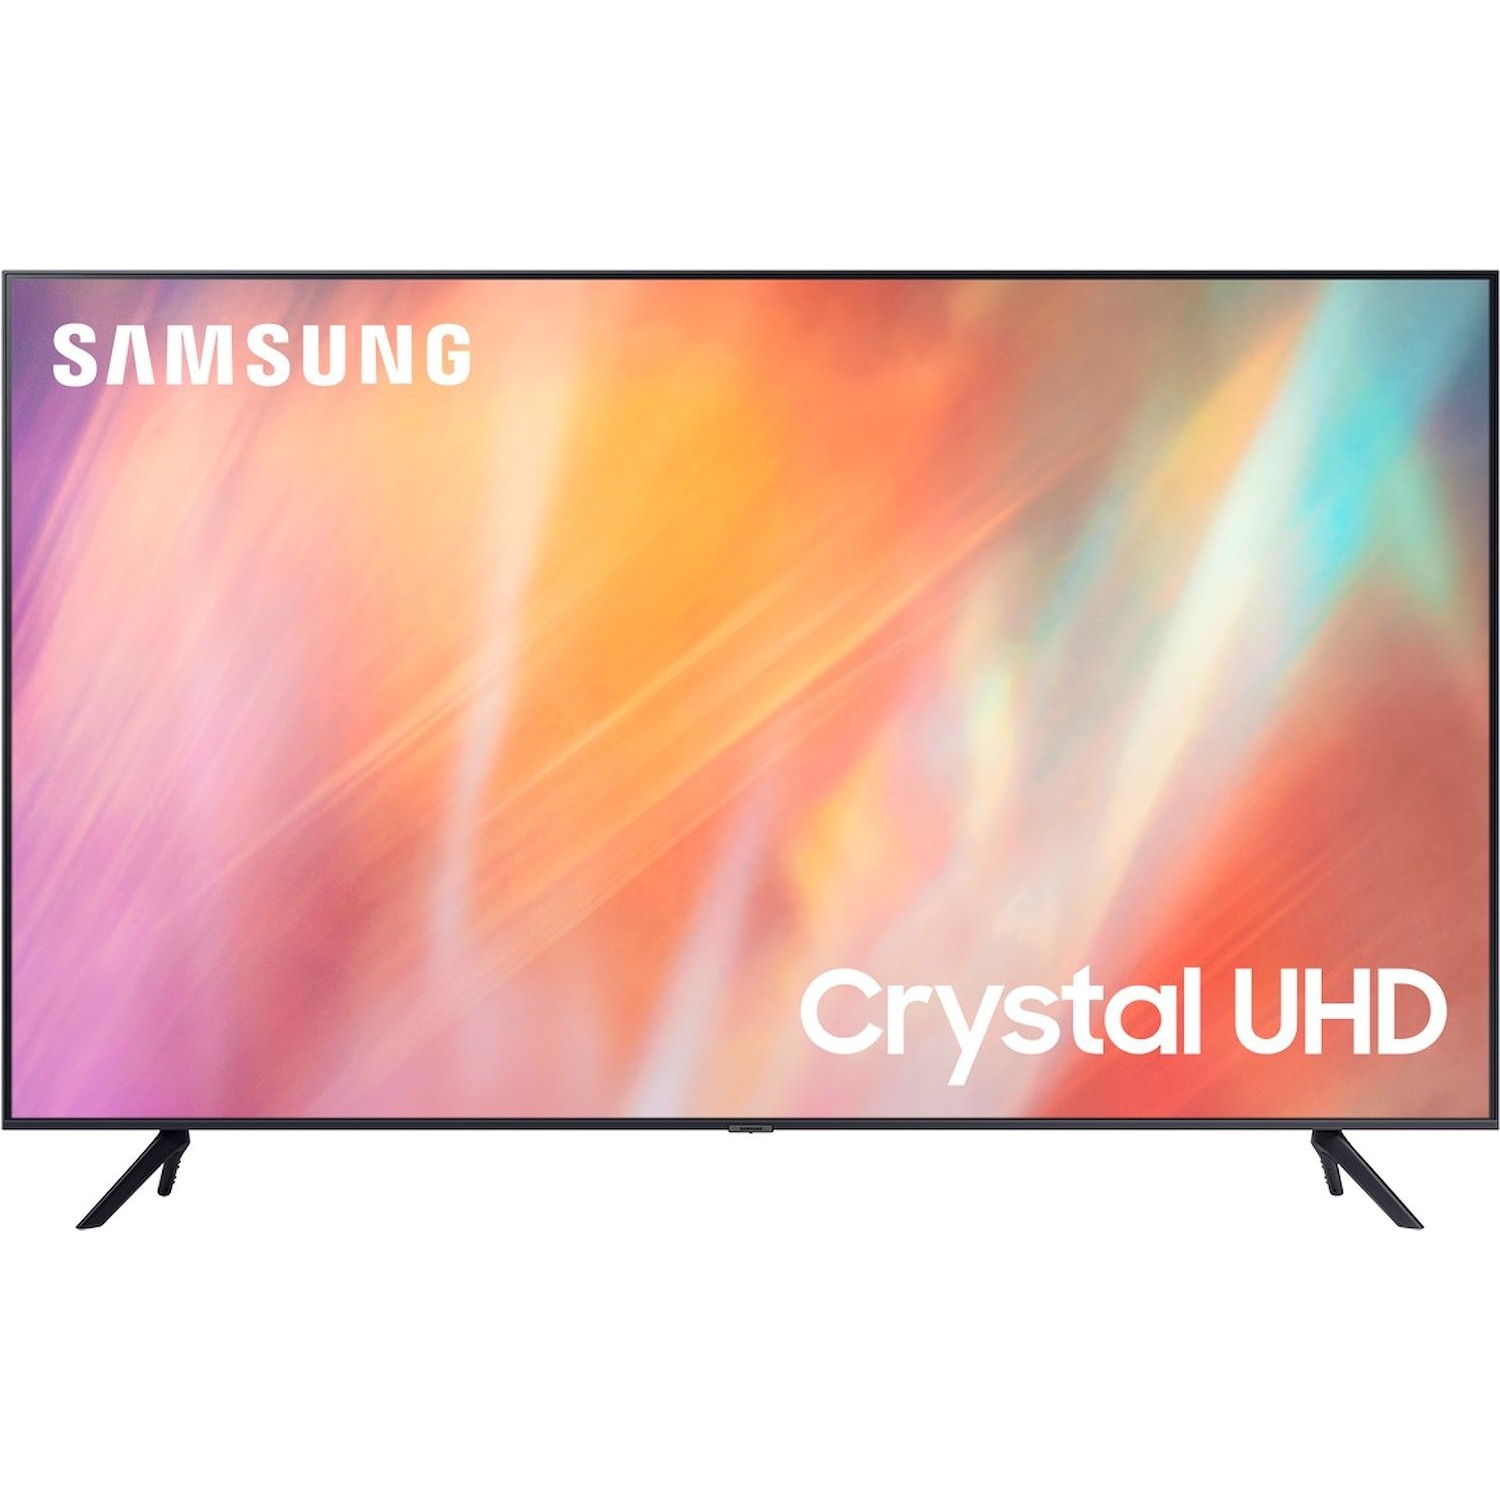 Immagine per TV LED Samsung 55AU7170 Calibrato 4K e FULL HD da DIMOStore